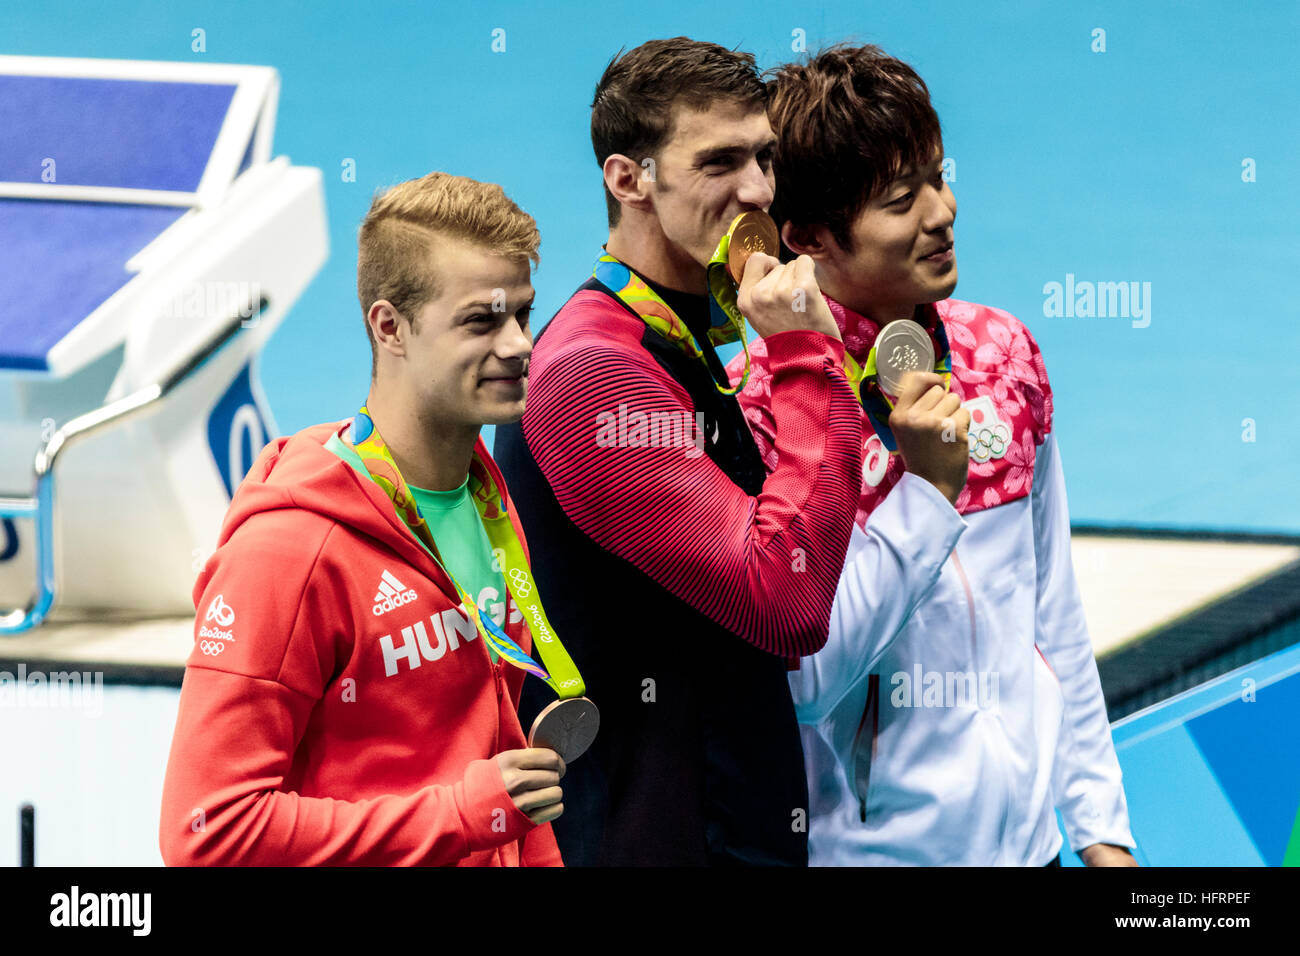 Río de Janeiro, Brasil. El 9 de agosto de 2016. Michael Phelps (ESTADOS UNIDOS)-C- el ganador de medalla de oro de los hombres de la 200m mariposa con Masato Sakai (JPN)-plata y Foto de stock